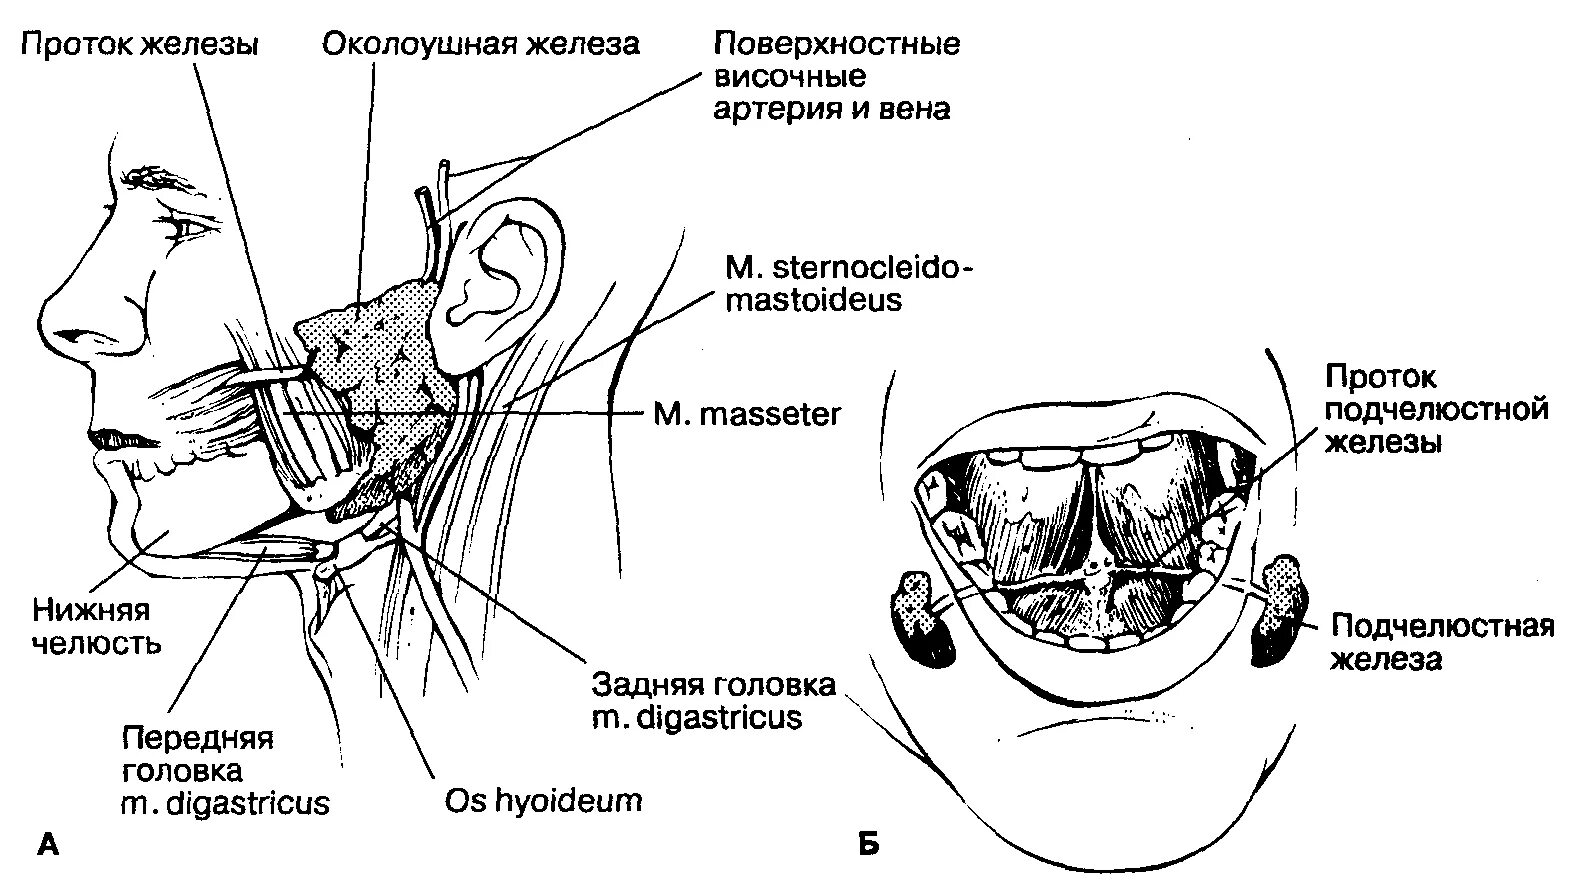 Образование околоушных желез. Строение поднижнечелюстной слюнной железы анатомия. Анатомия протока подчелюстной слюнной железы. Проток околоушной железы топография. Выводной проток околоушной слюнной железы анатомия.